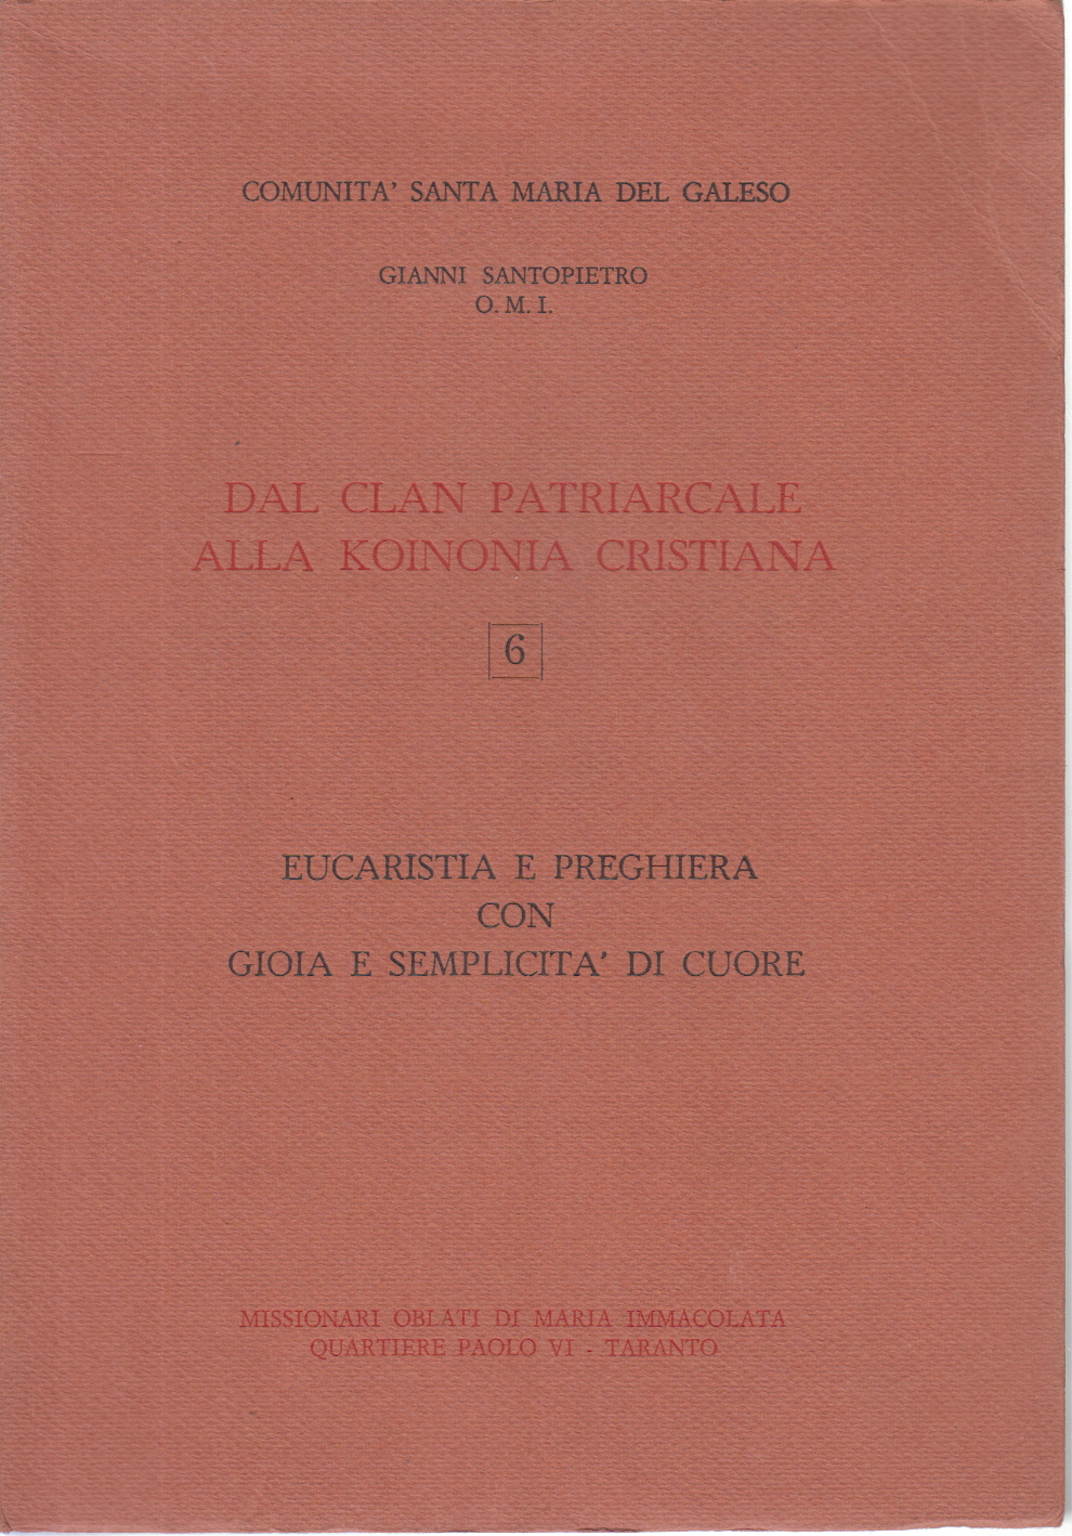 Eucharistie und gebet, mit freude und einfachheit von c, Gianni Santopietro O. M. I.